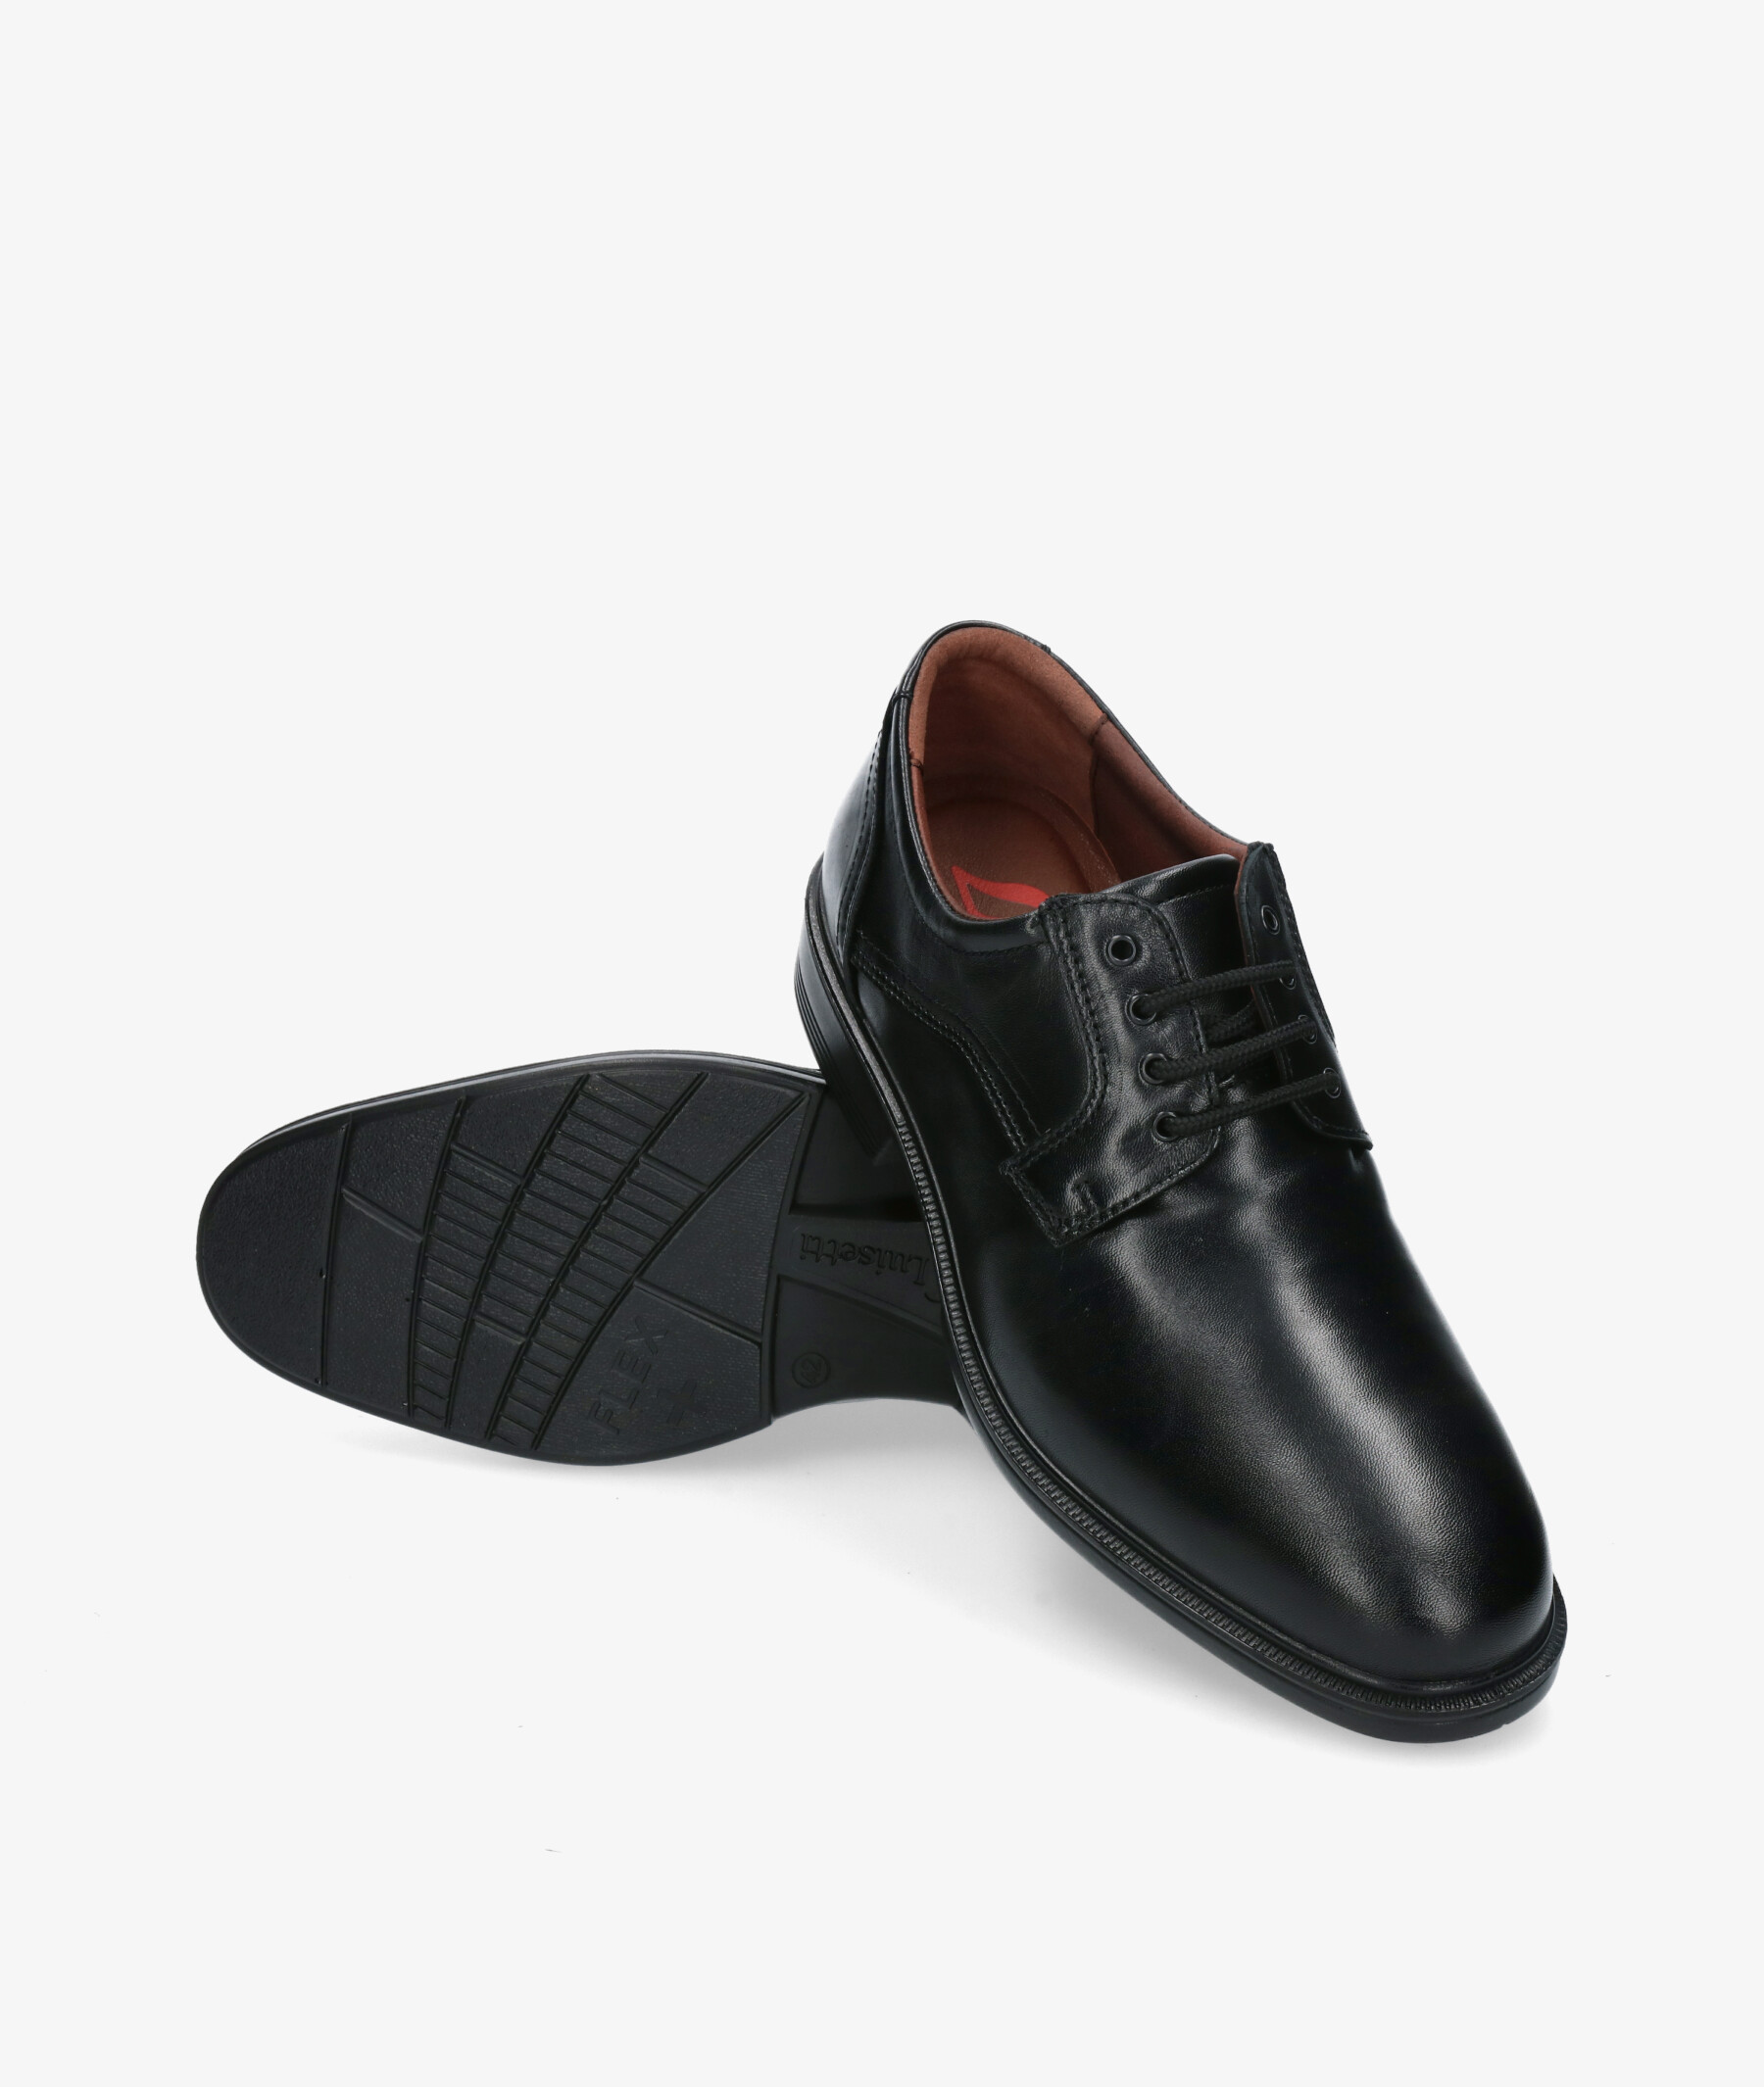 Elige bien los zapatos de vestir hombre - Luisetti Blog